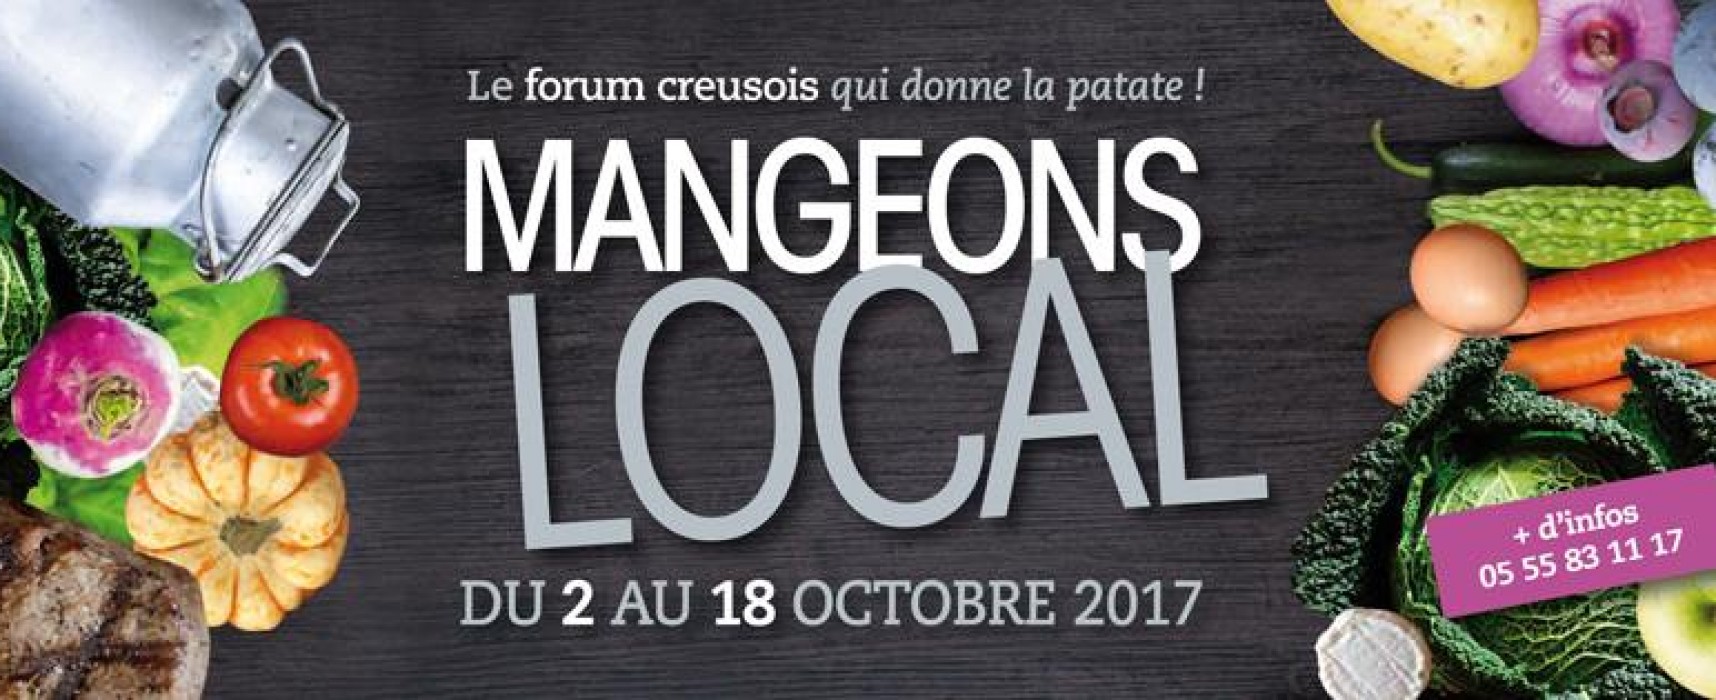 1er Forum de l’alimentation locale – « Mangeons local, le forum creusois qui donne la patate ! » du 2 au 18 octobre 2017